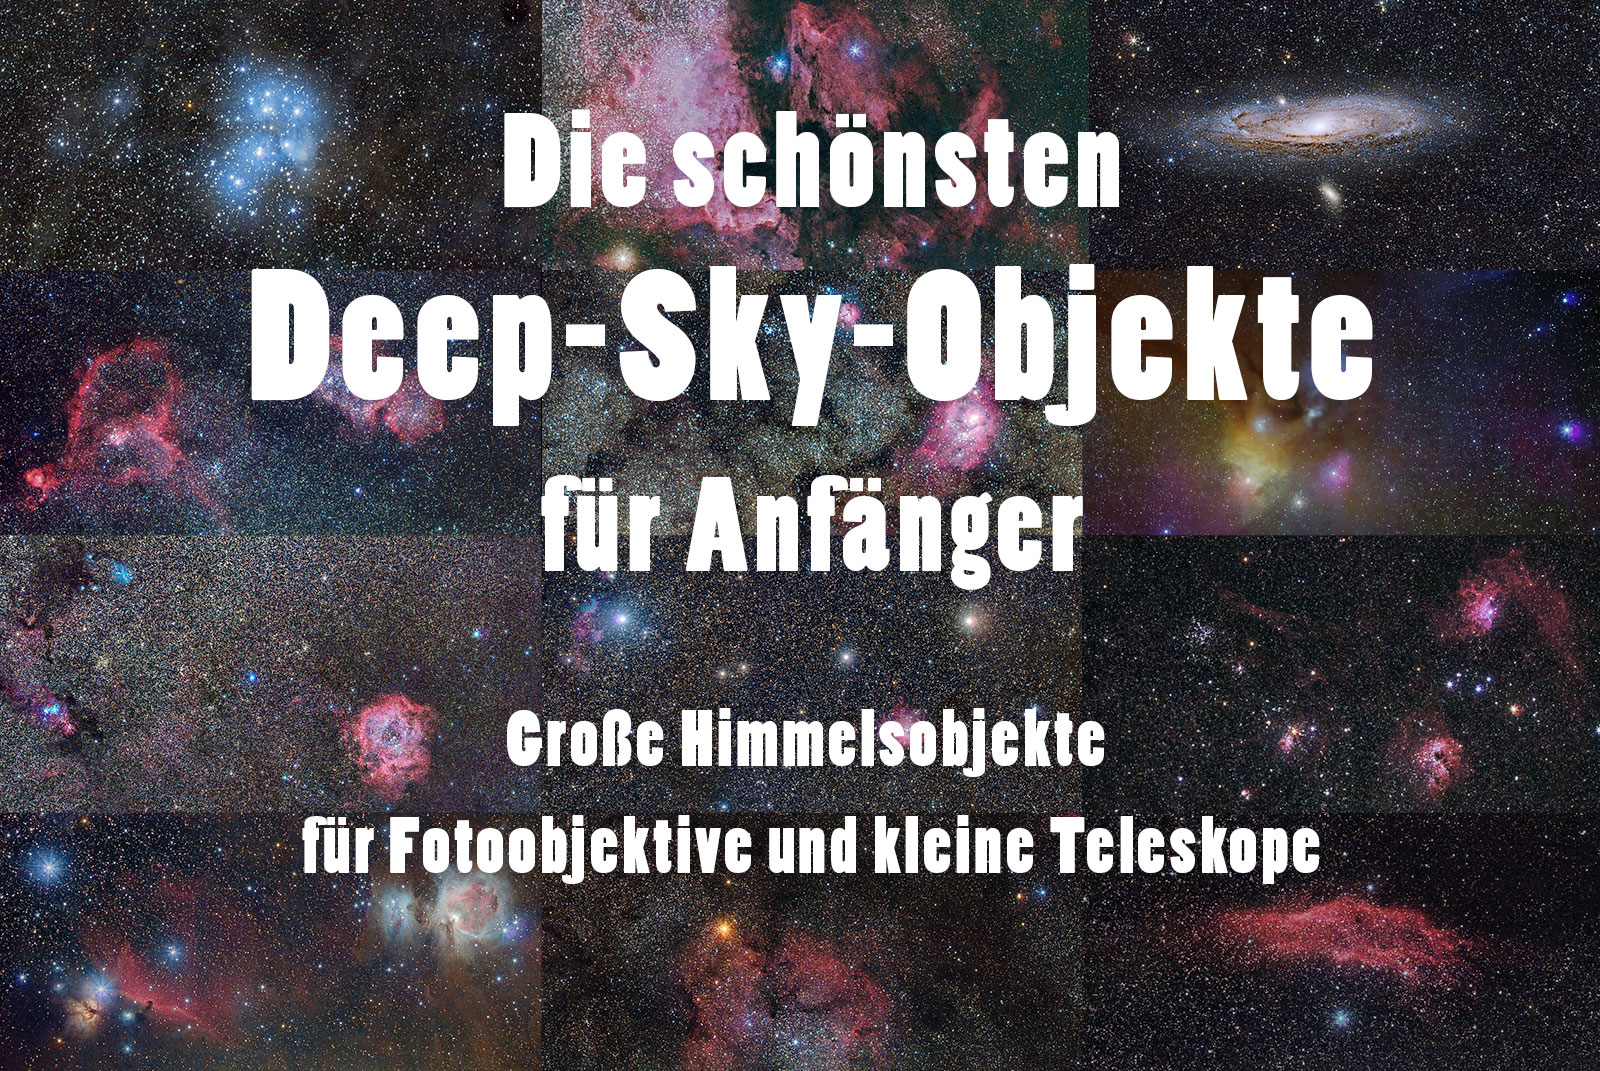 Deep-Sky-Objekte für Anfänger